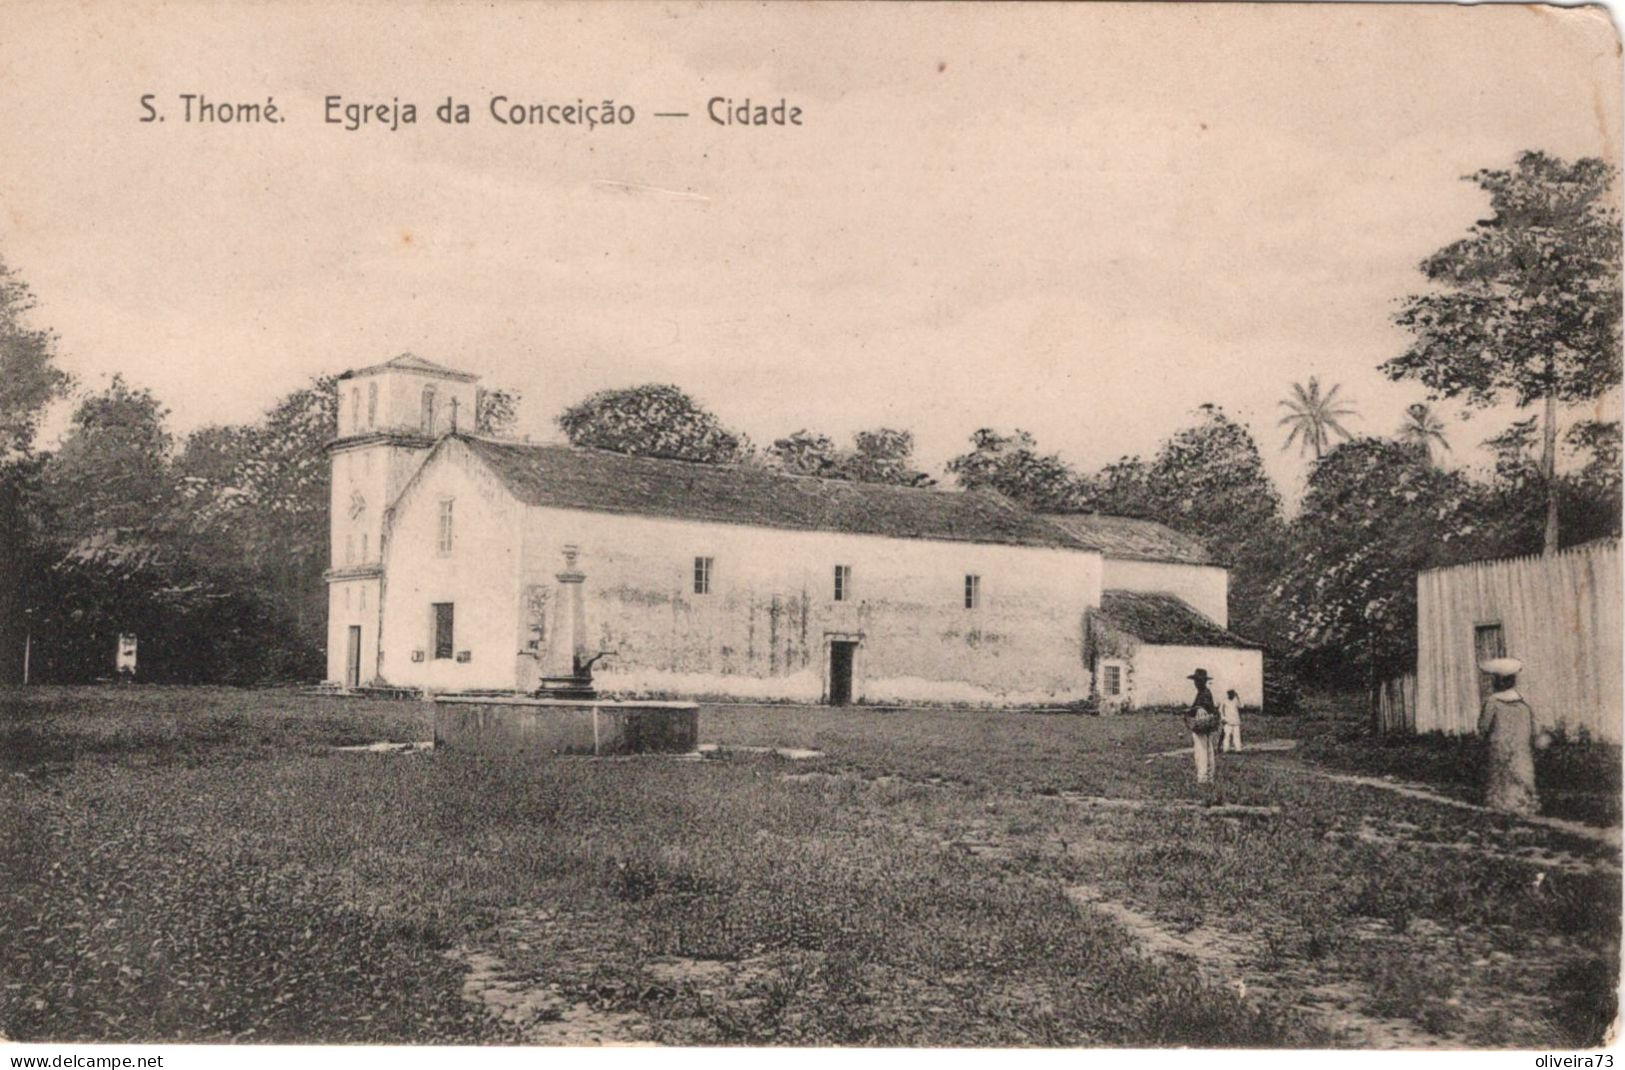 SÃO TOME E PRINCIPE - S. THOMÉ - Igreja Da Conceição - Cidade - Sao Tome Et Principe